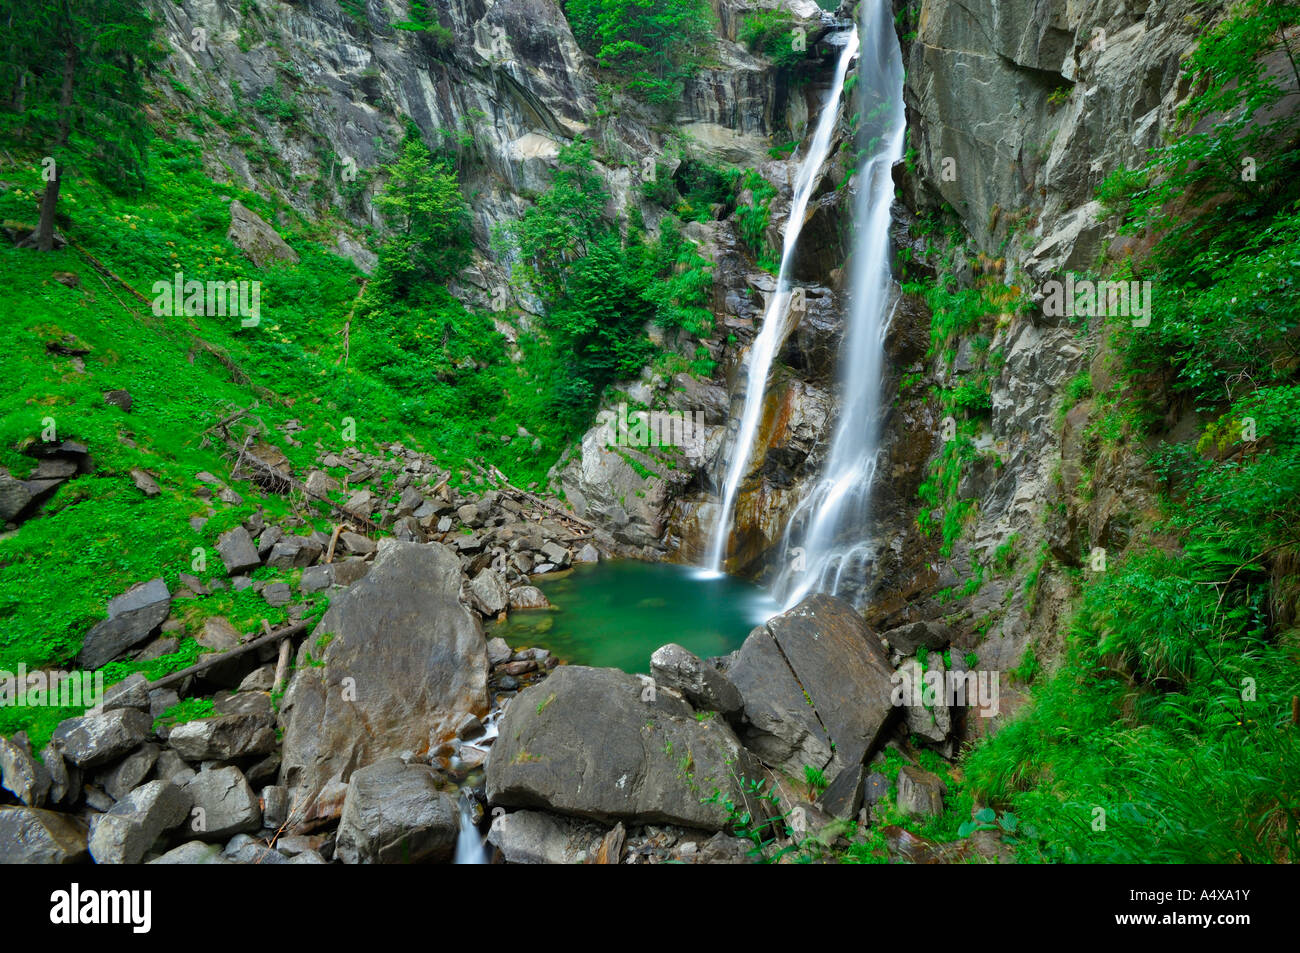 La cascata di cadere in un po' lago, esposizione di lungo periodo e la Valle della Val Passiria, Trentino, Alto Adige, Italia Foto Stock